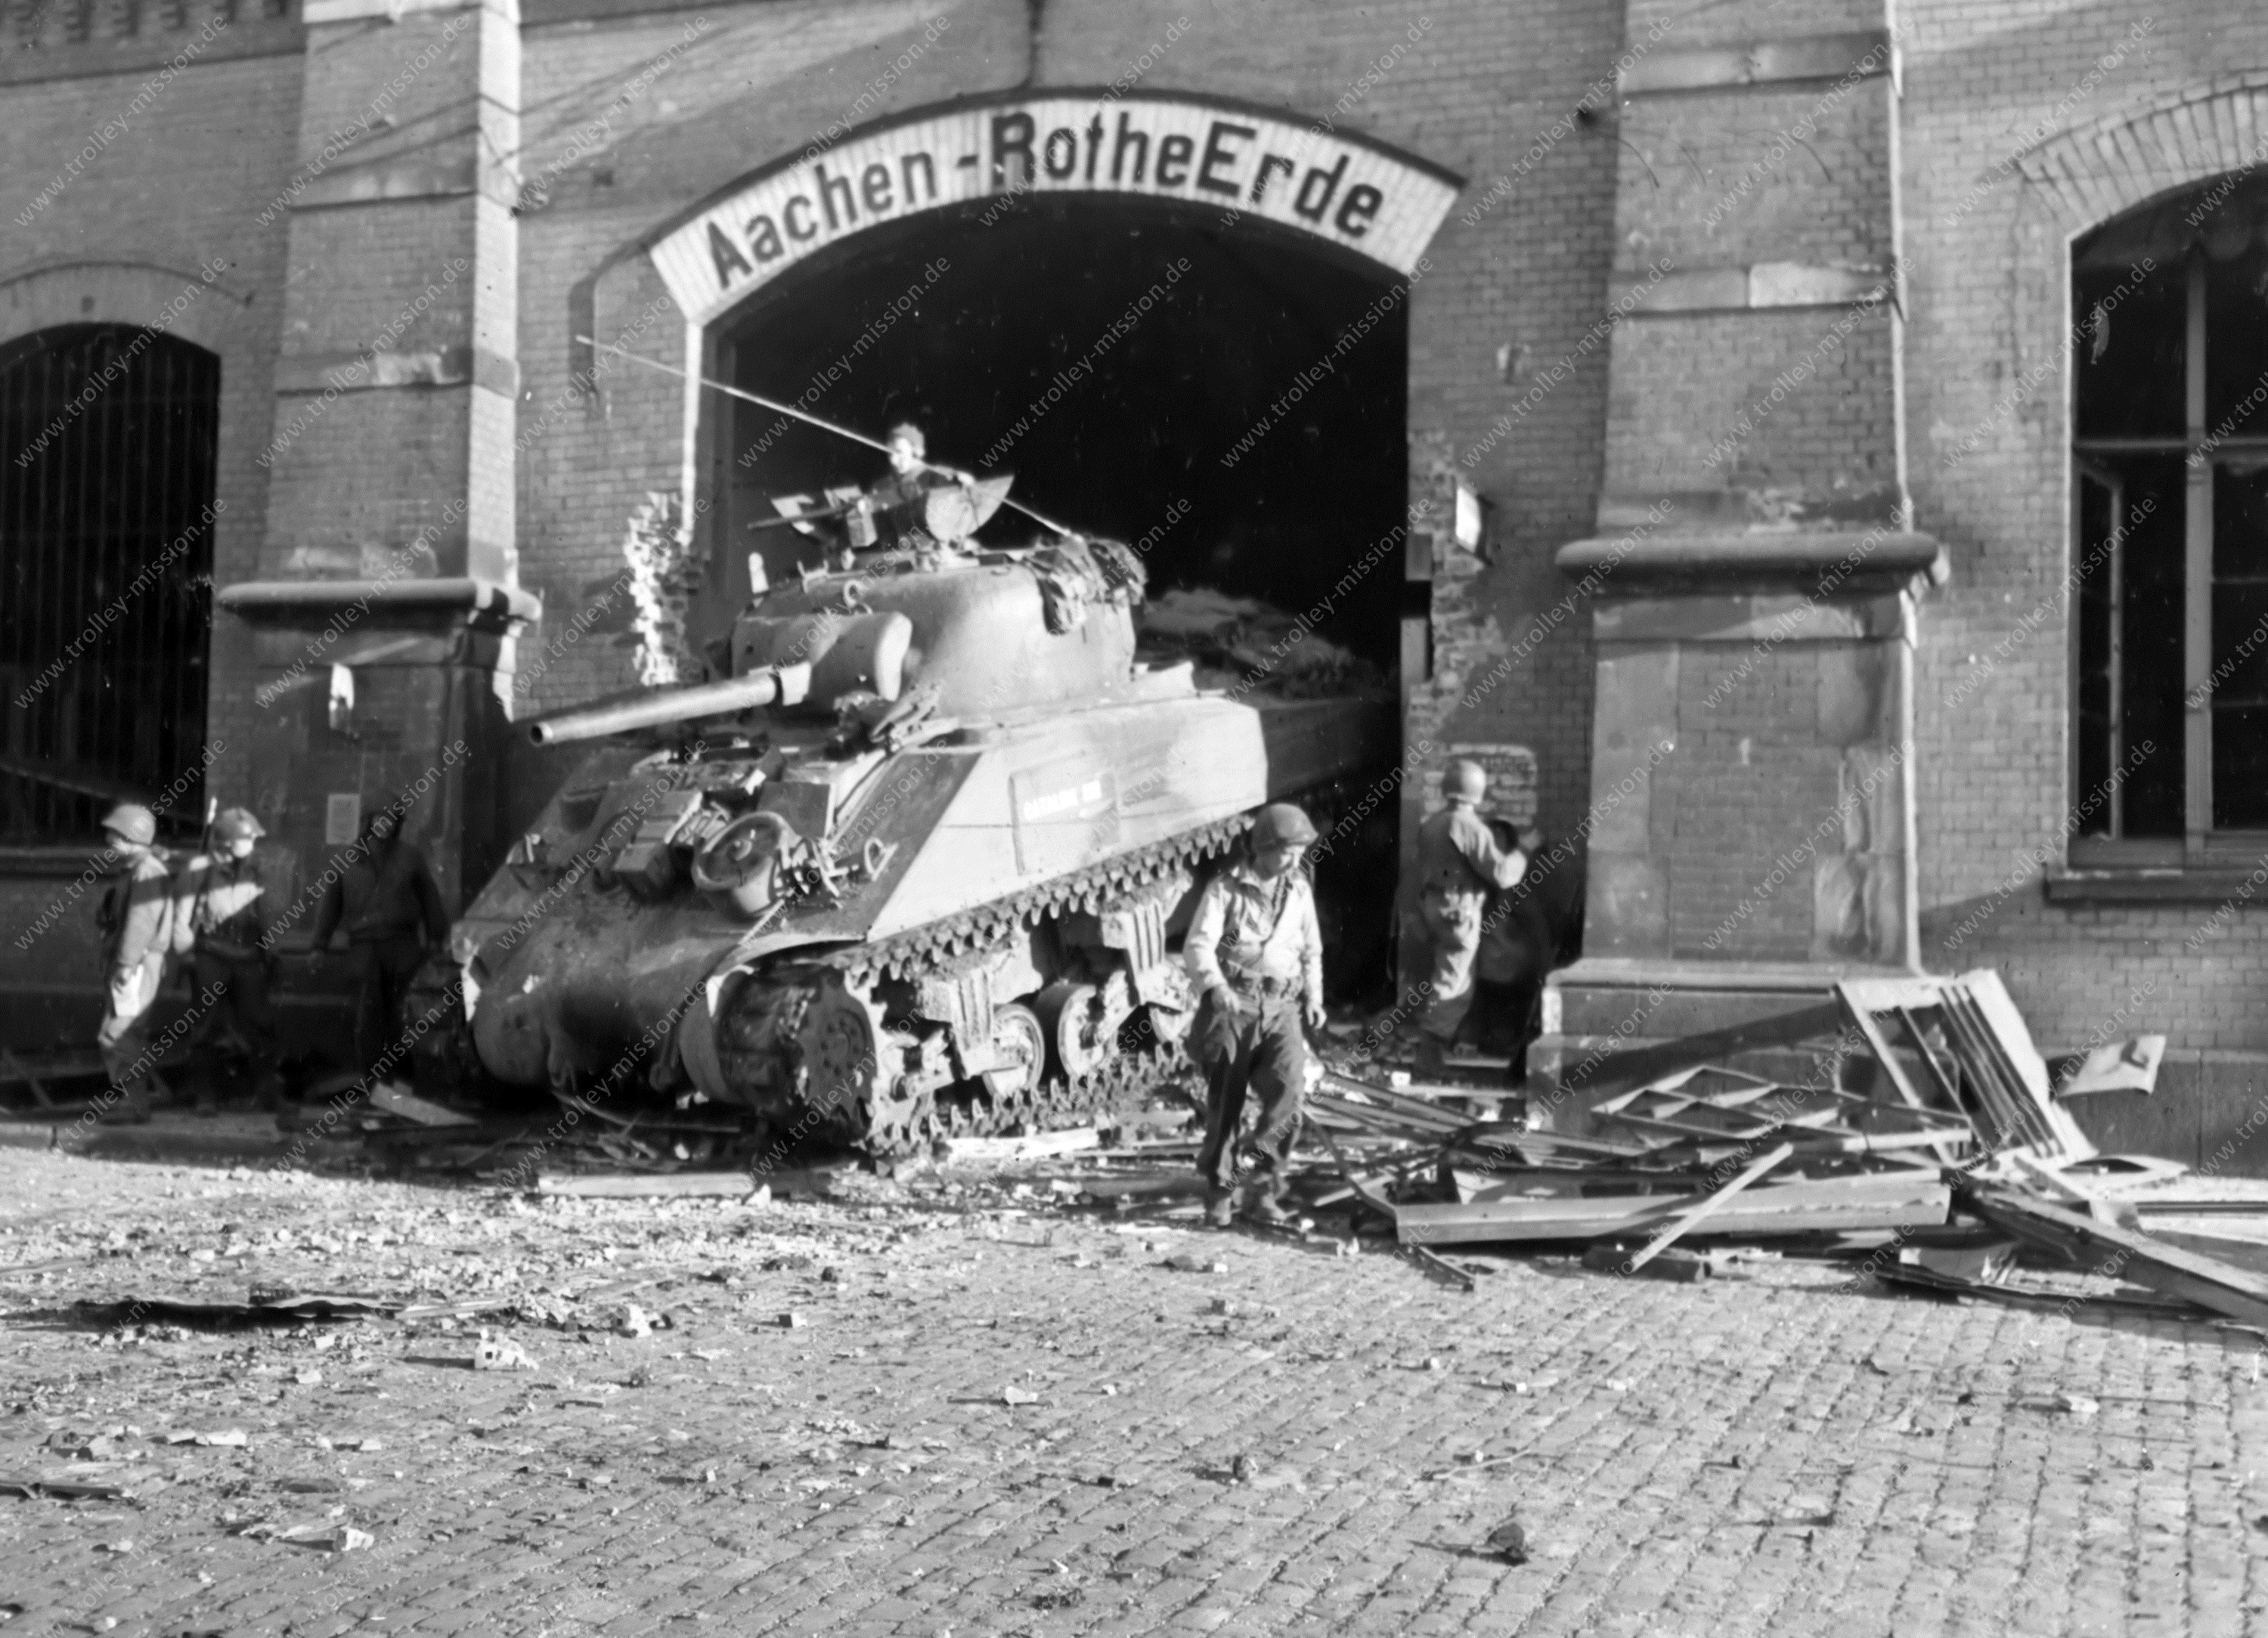 Panzer der US Armee am Bahnhof Rothe Erde - Aachen im Zweiten Weltkrieg